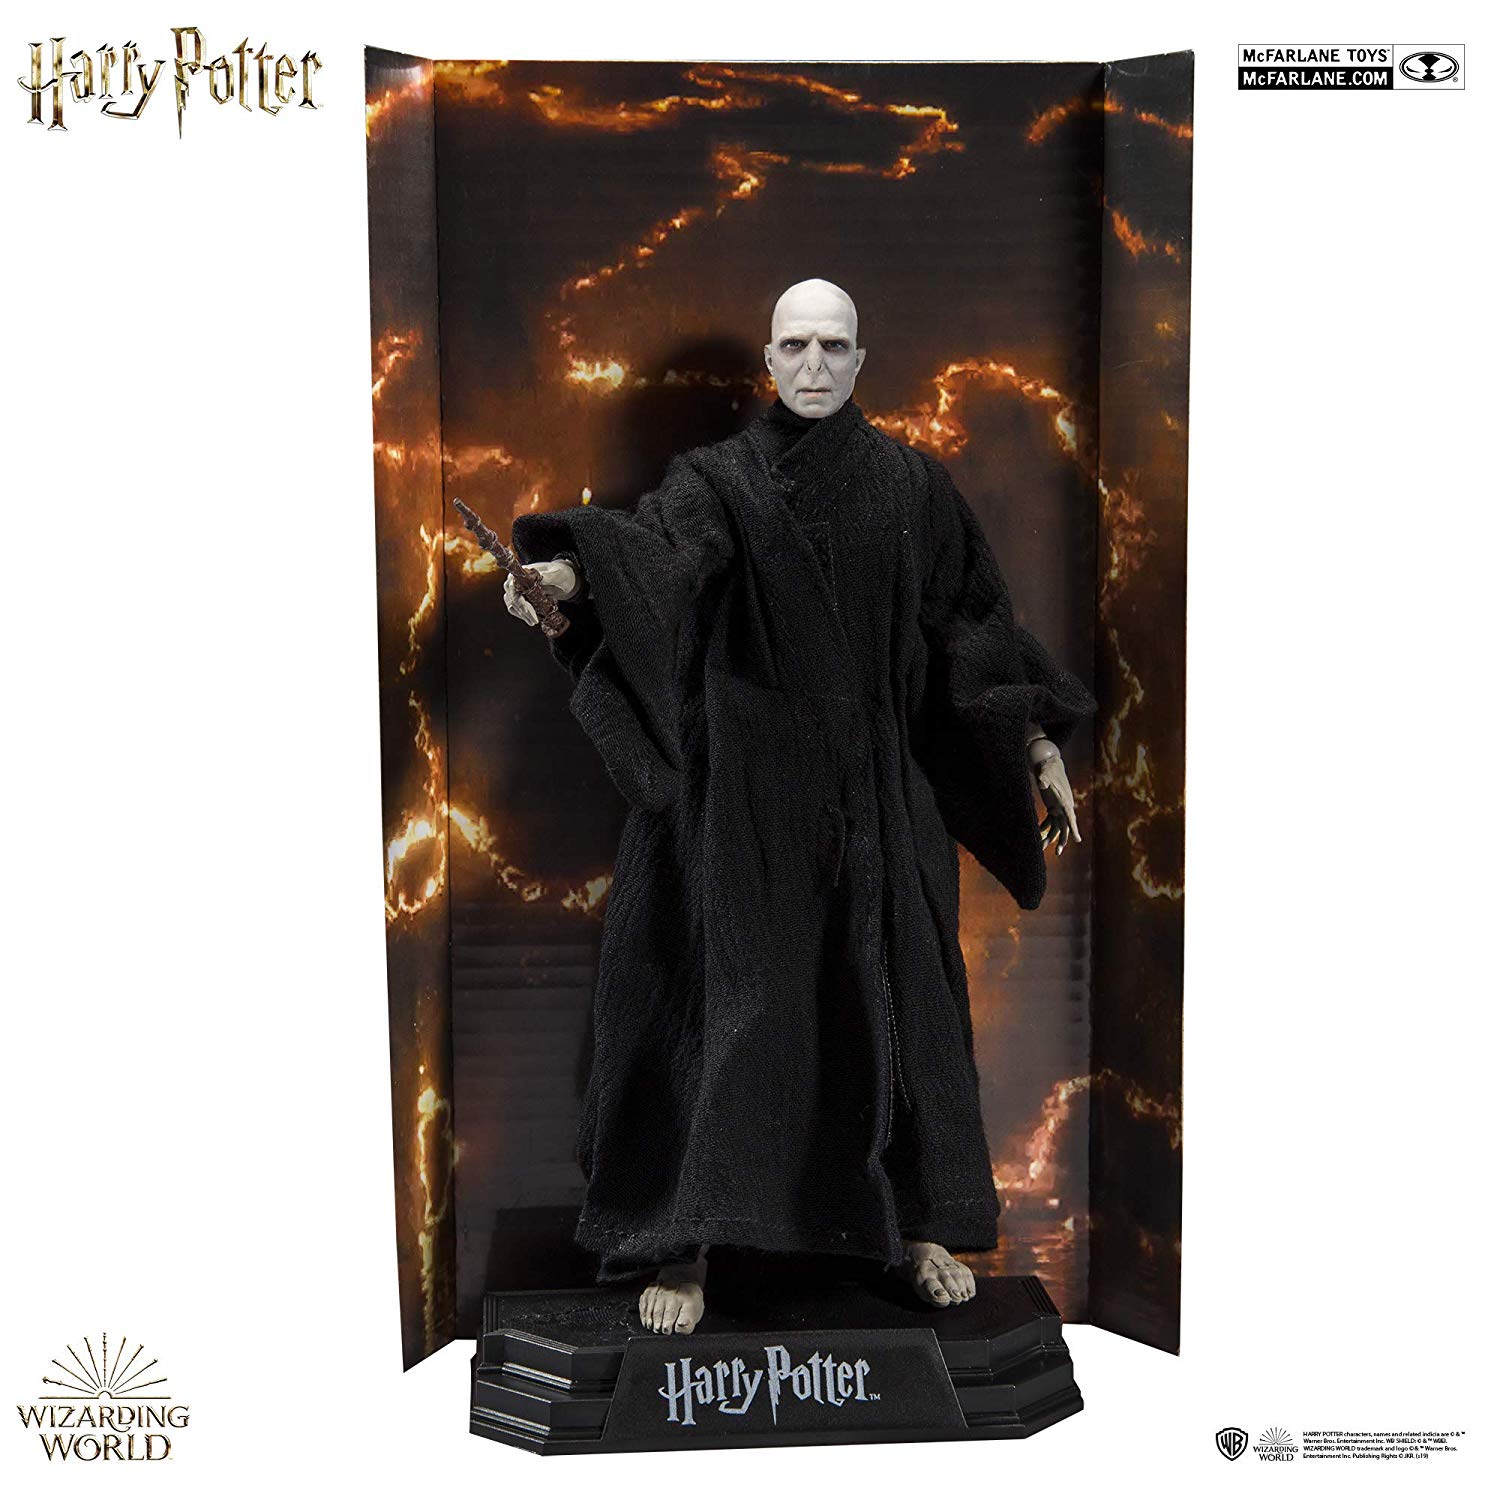 McFarlane Toys Harry Potter - Lord Voldemort Action Figure Oficial Licenciado